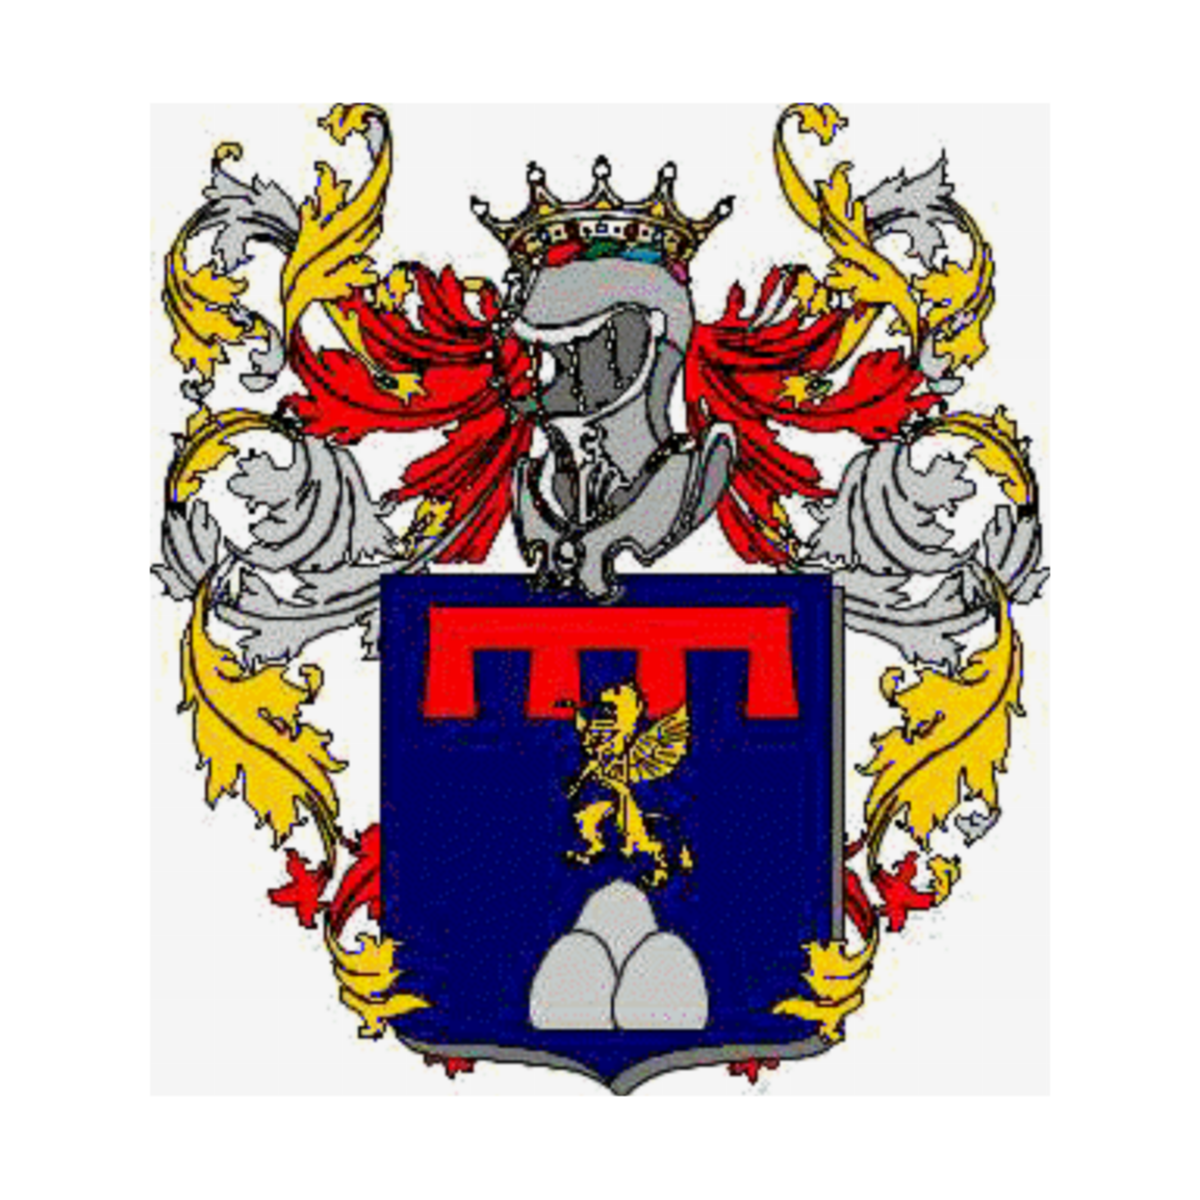 Wappen der Familie Fiandrino